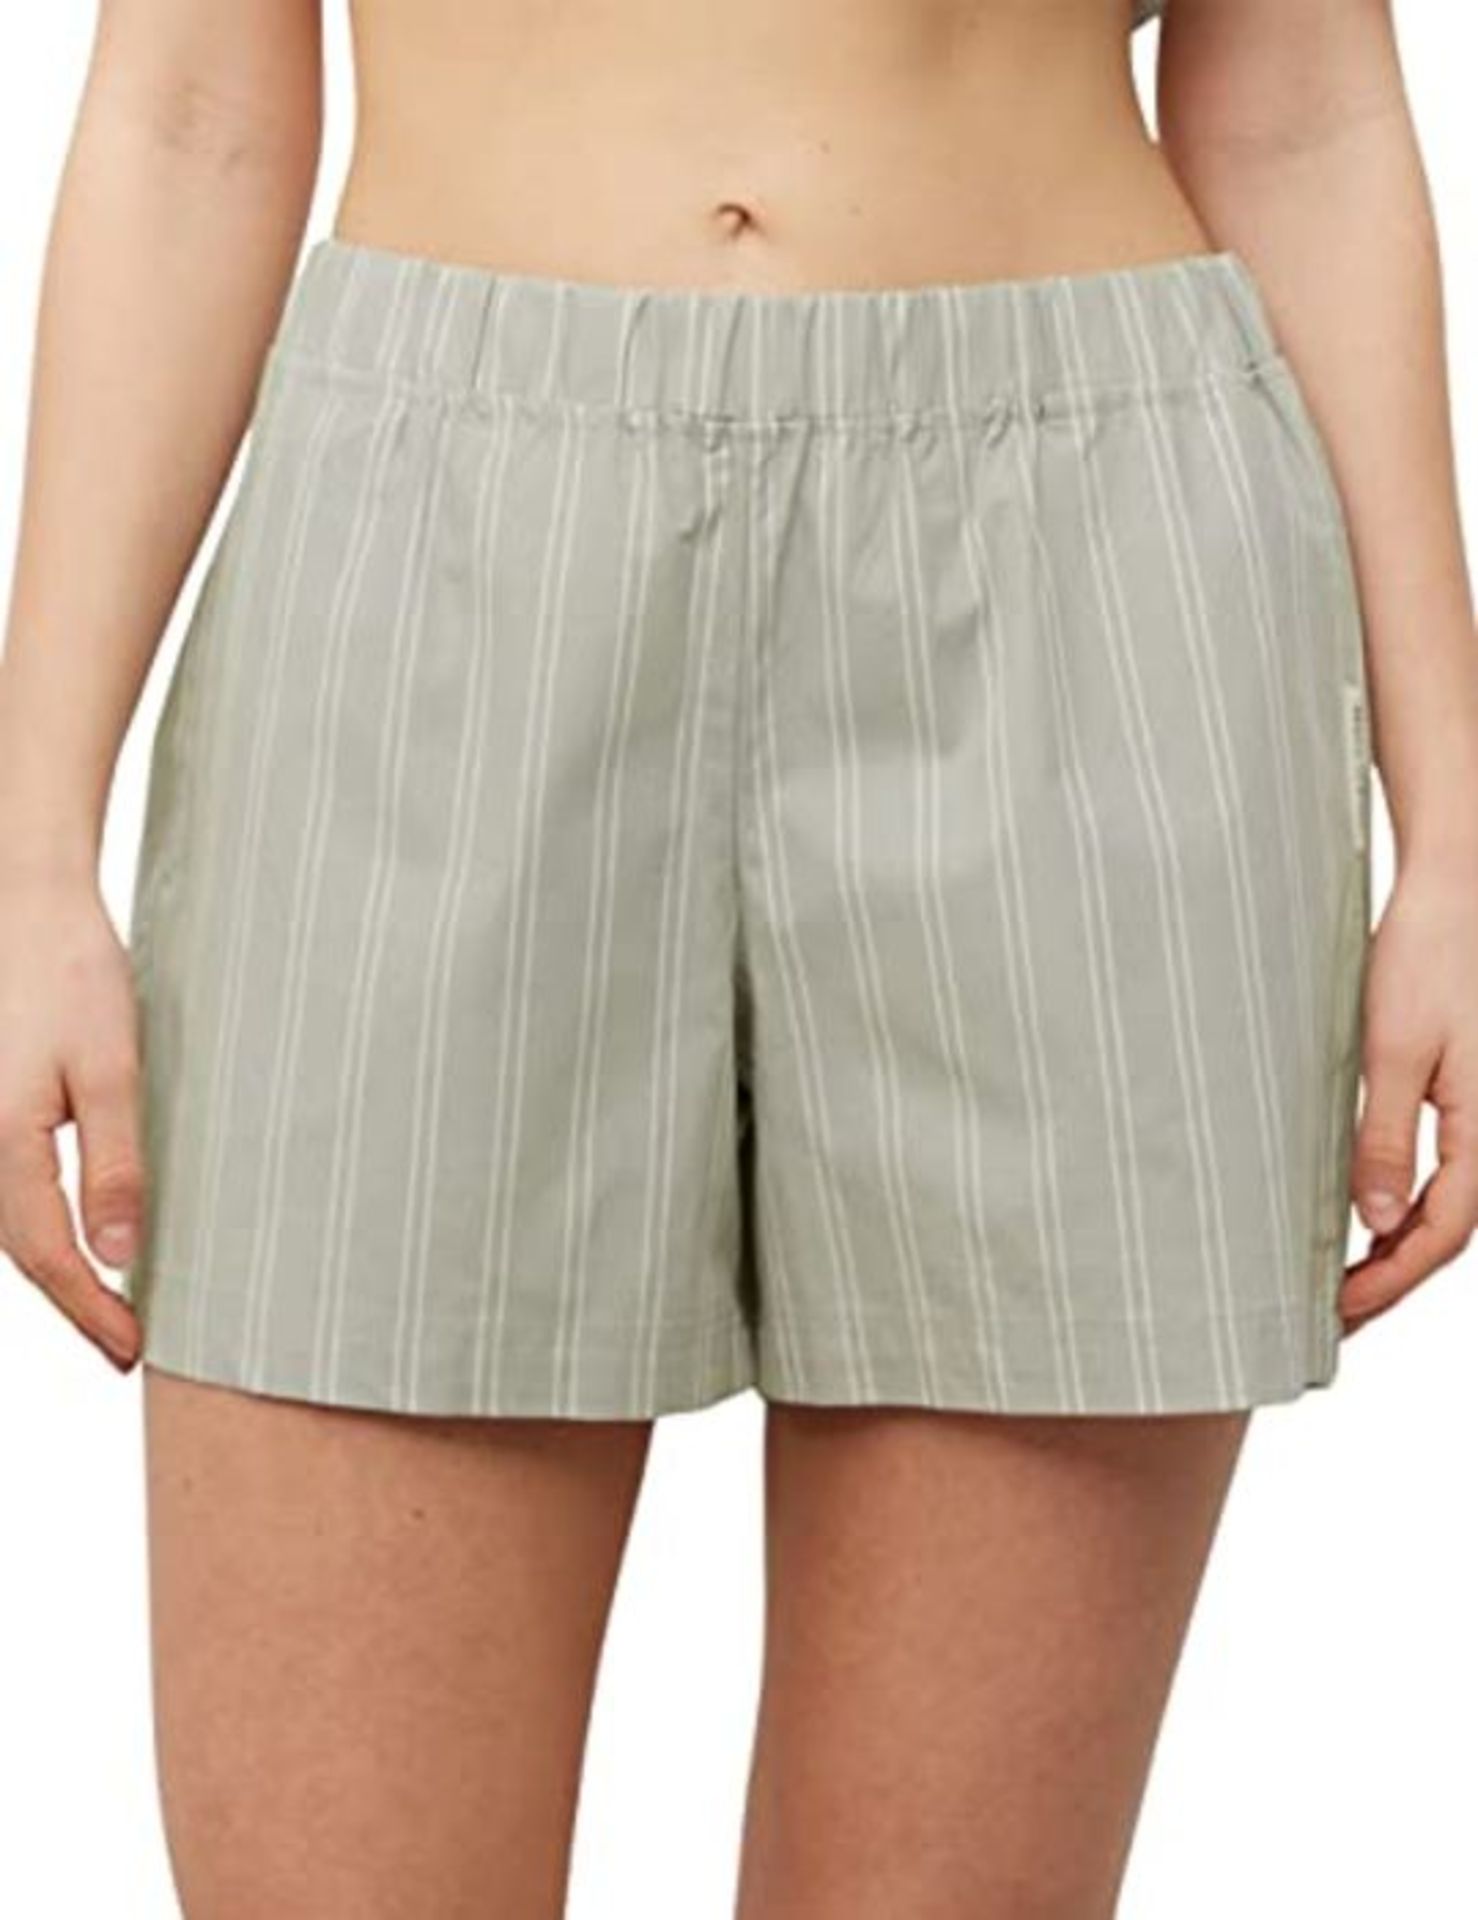 Marc O?Polo Body & Beach Women's W-Shorts Pajama Bottom, Mineral, XXL